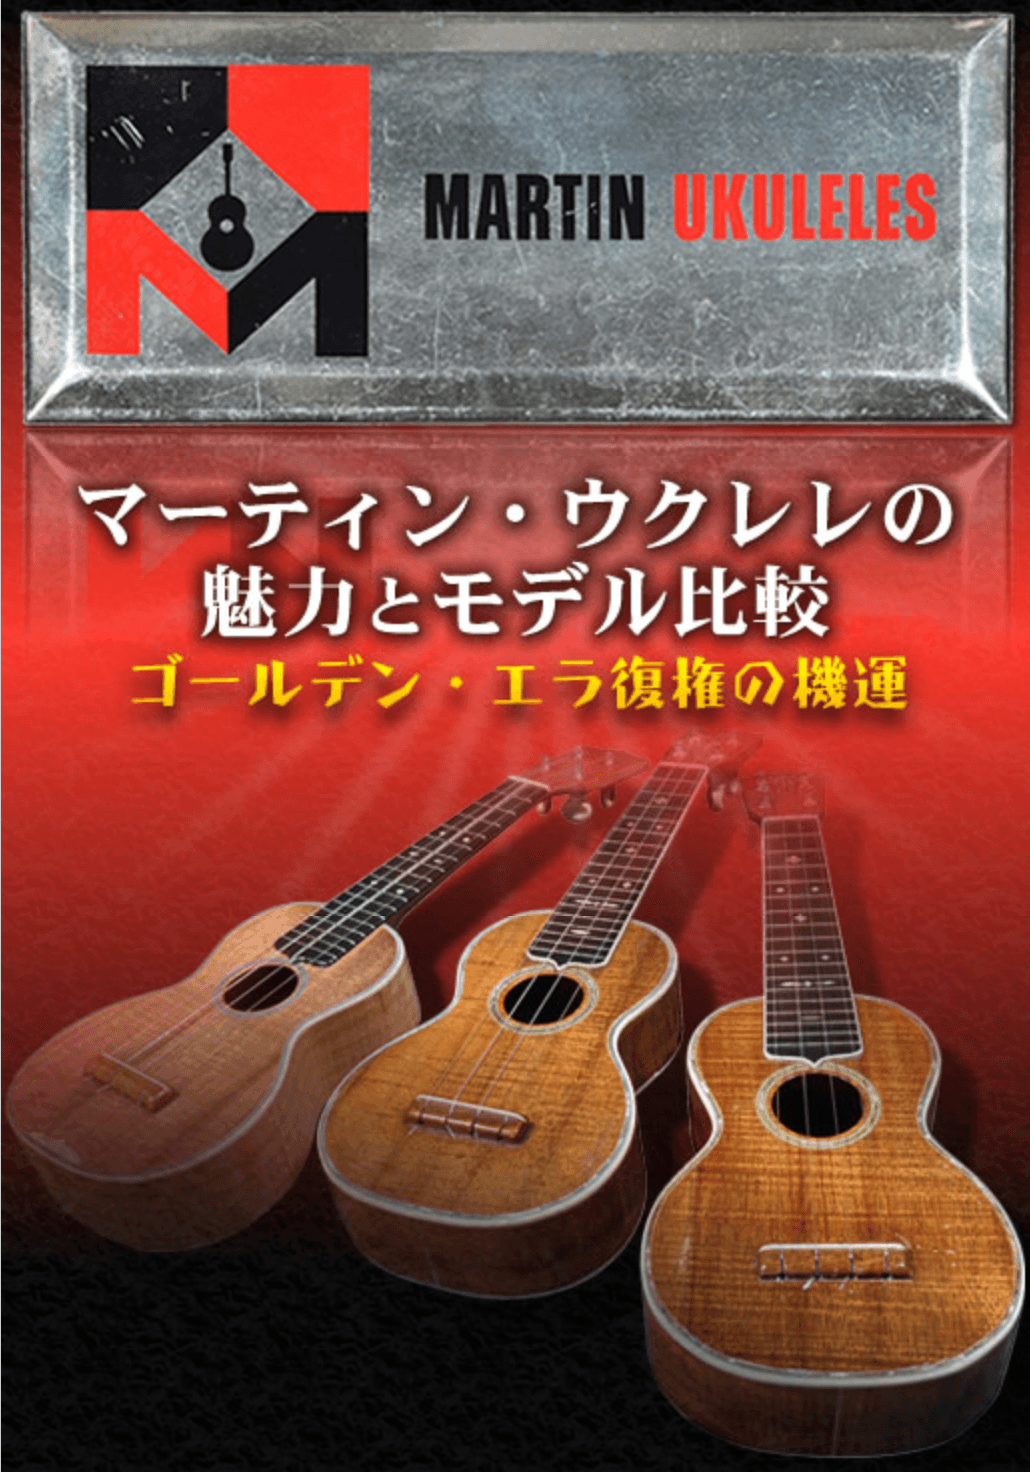 The Hawaiian Ukulele Company 4 string Soprano Late 90's - Wood